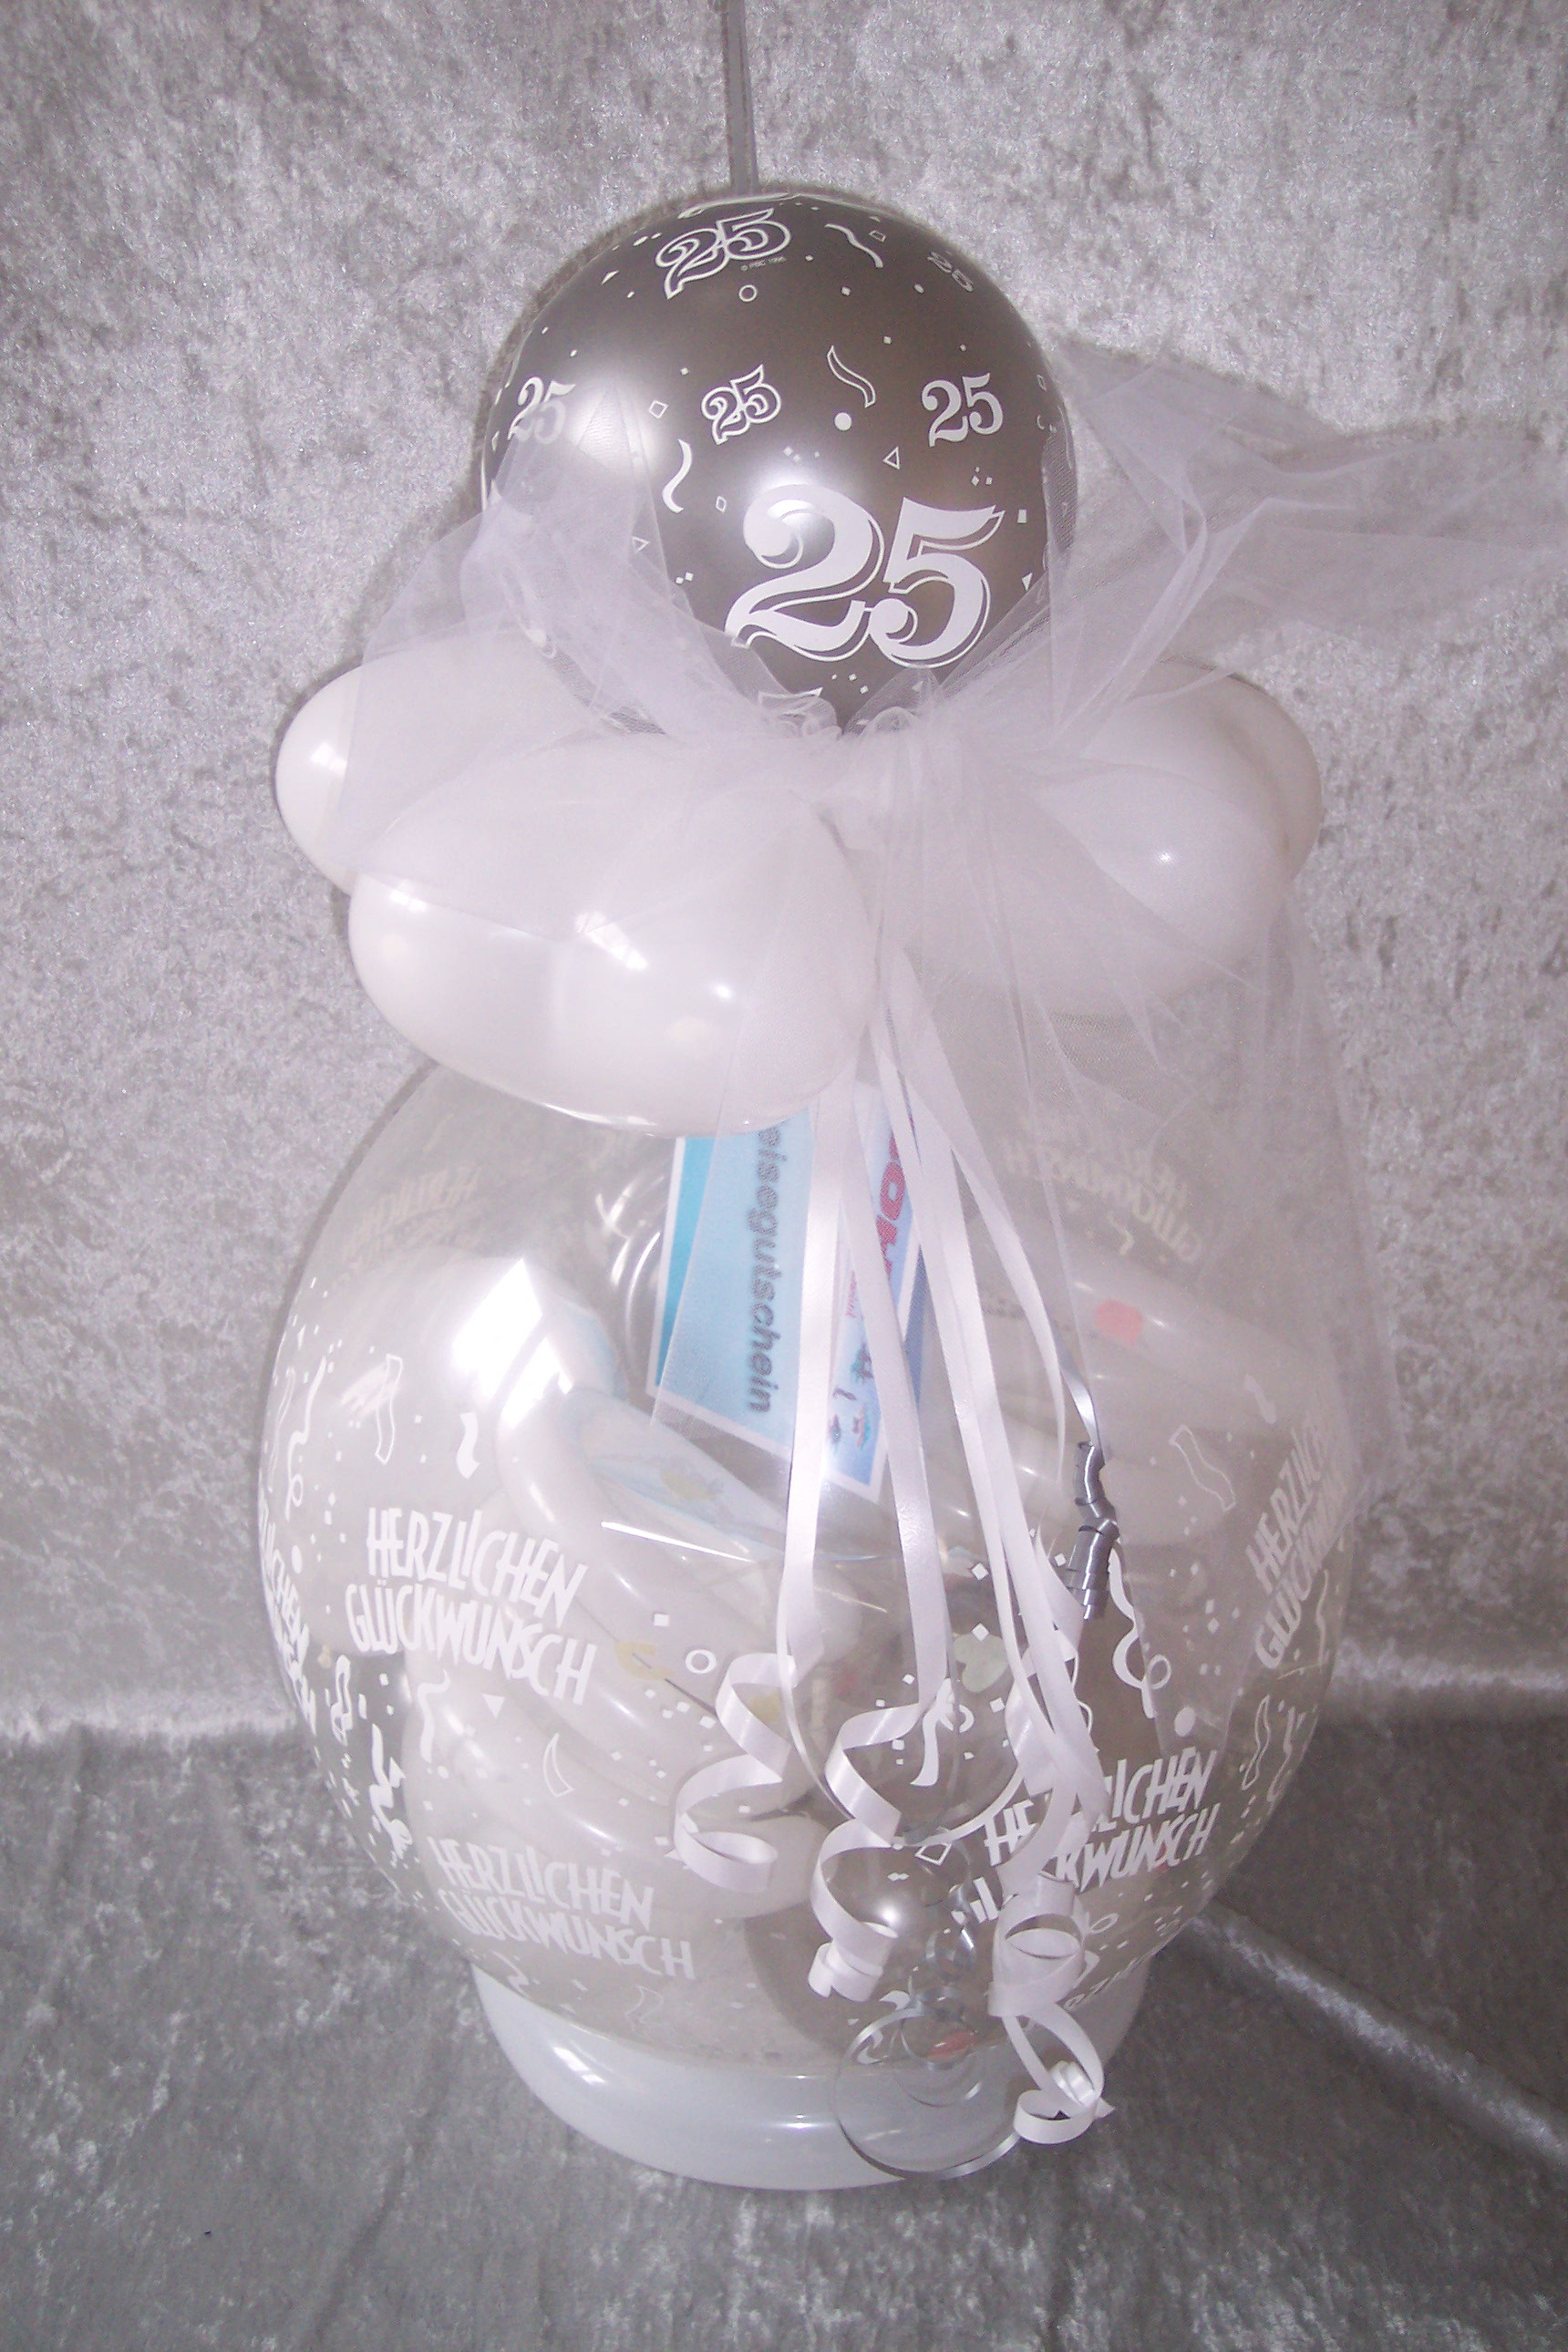 Silberne Hochzeit Geschenk
 Silberhochzeit Geschenk im Ballon Luftballon